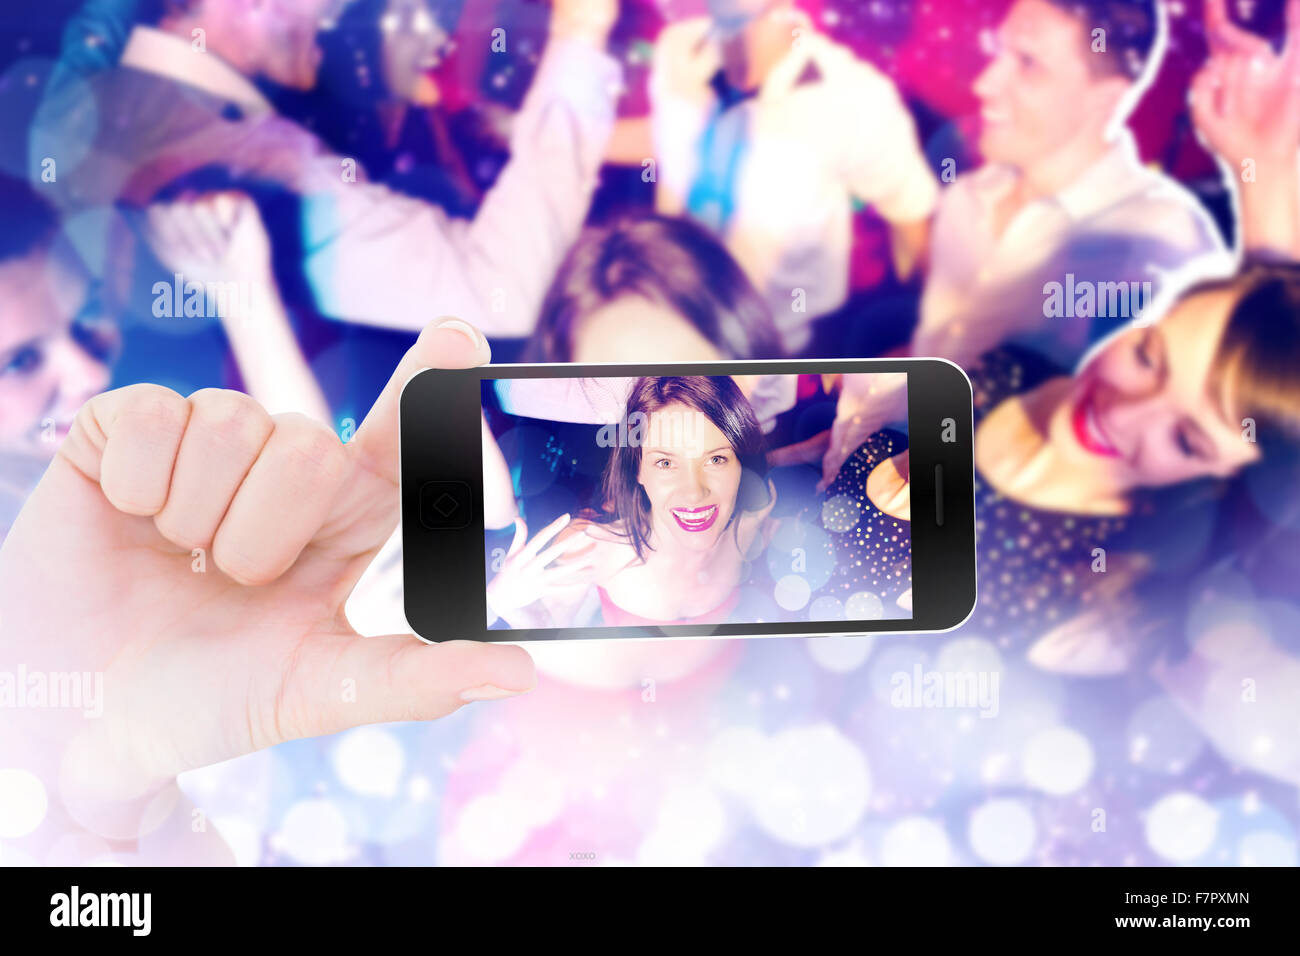 Immagine composita di femmine della mano che tiene uno smartphone Foto Stock